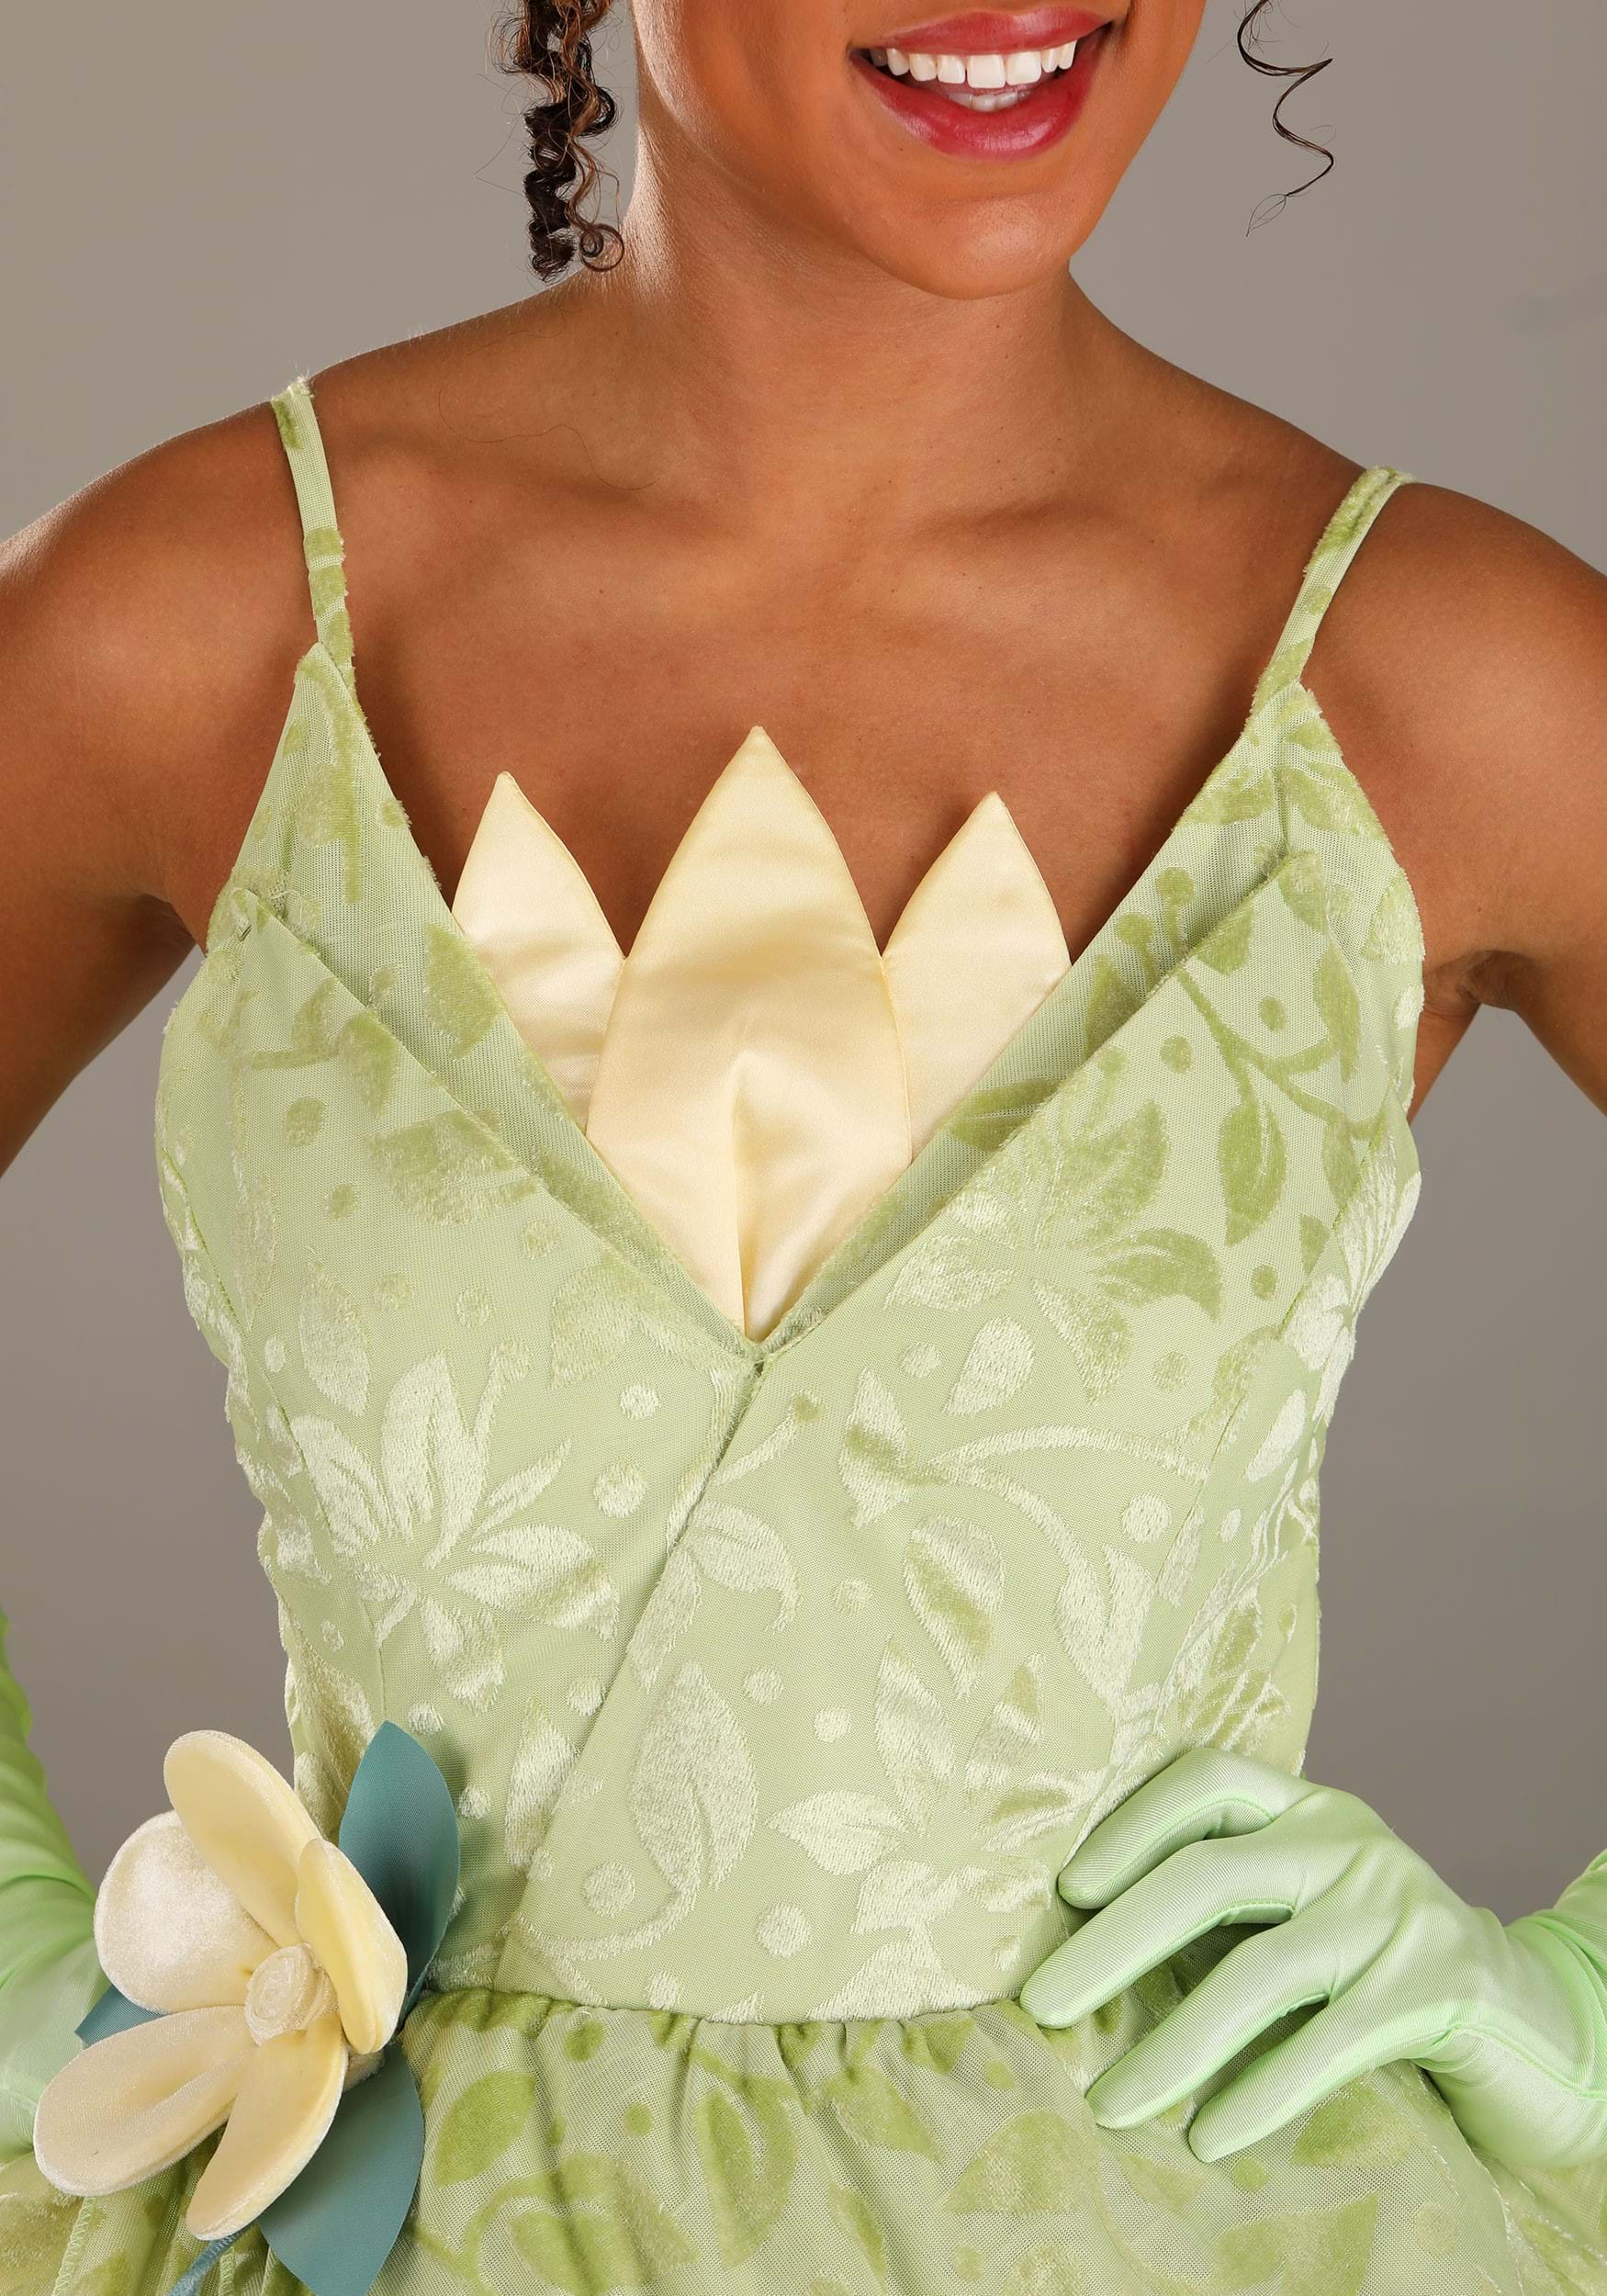 Women's Disney Deluxe Tiana Costume